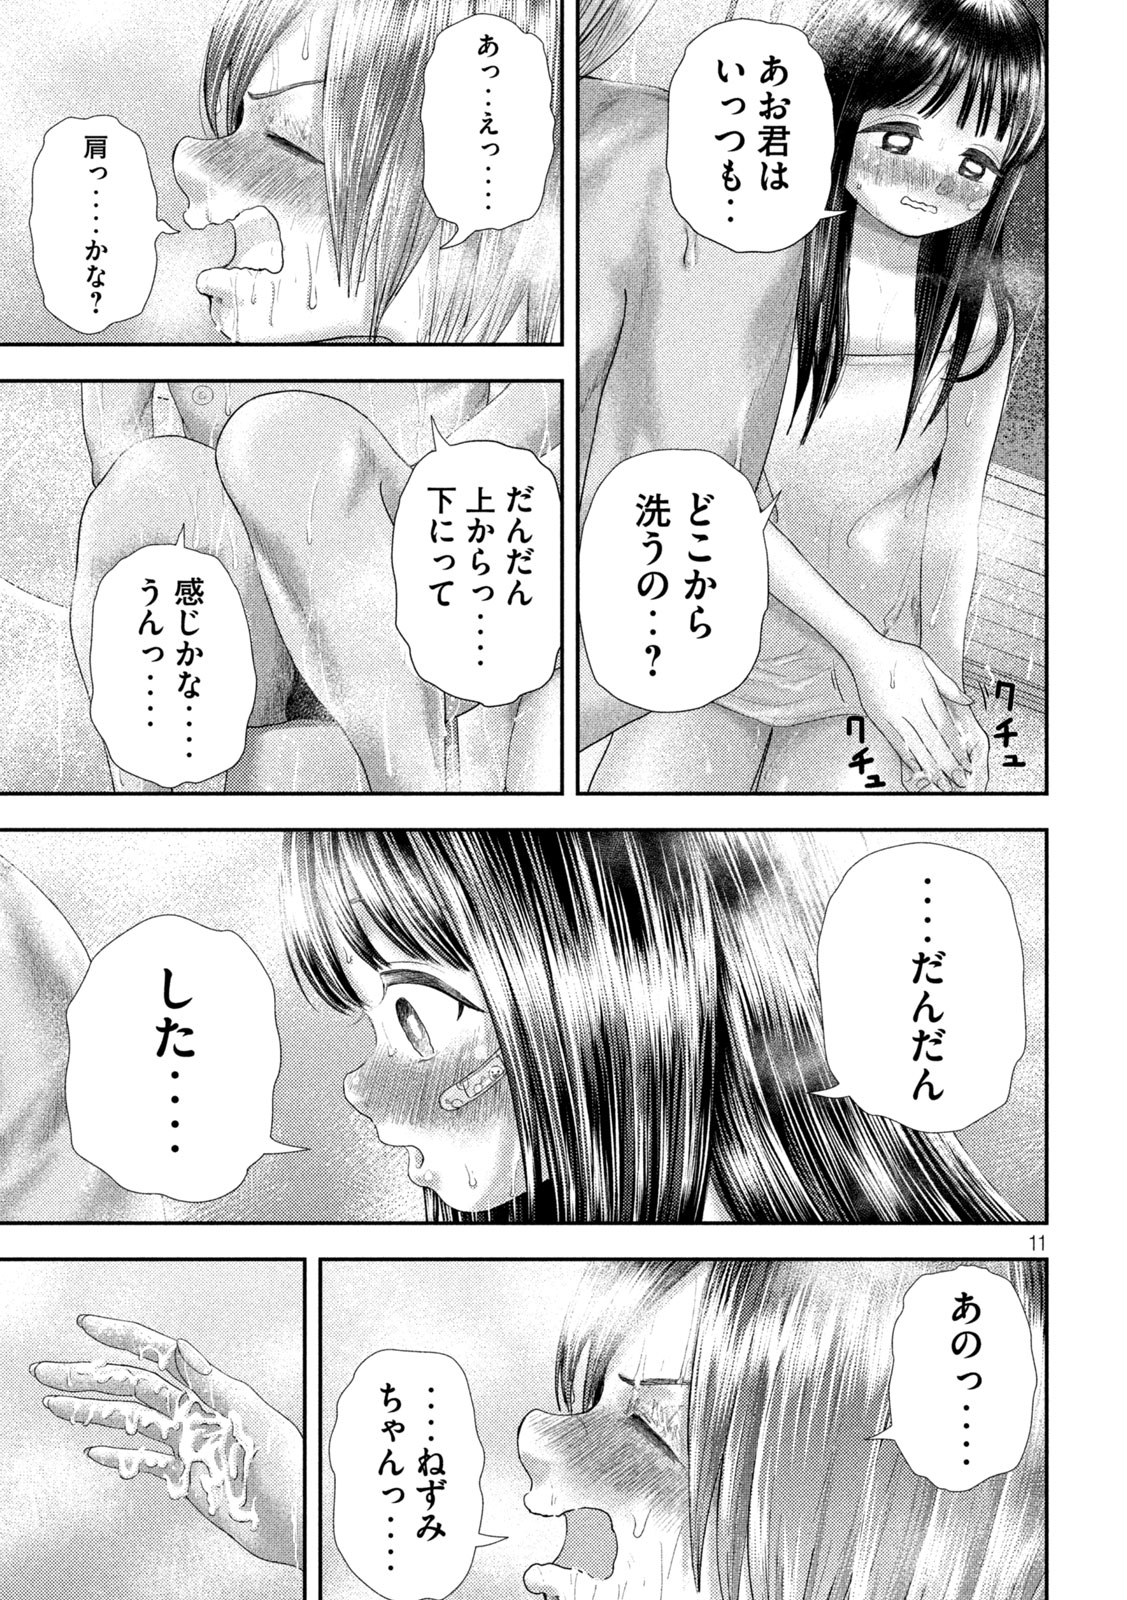 Nezumi no Koi - Chapter 27 - Page 11